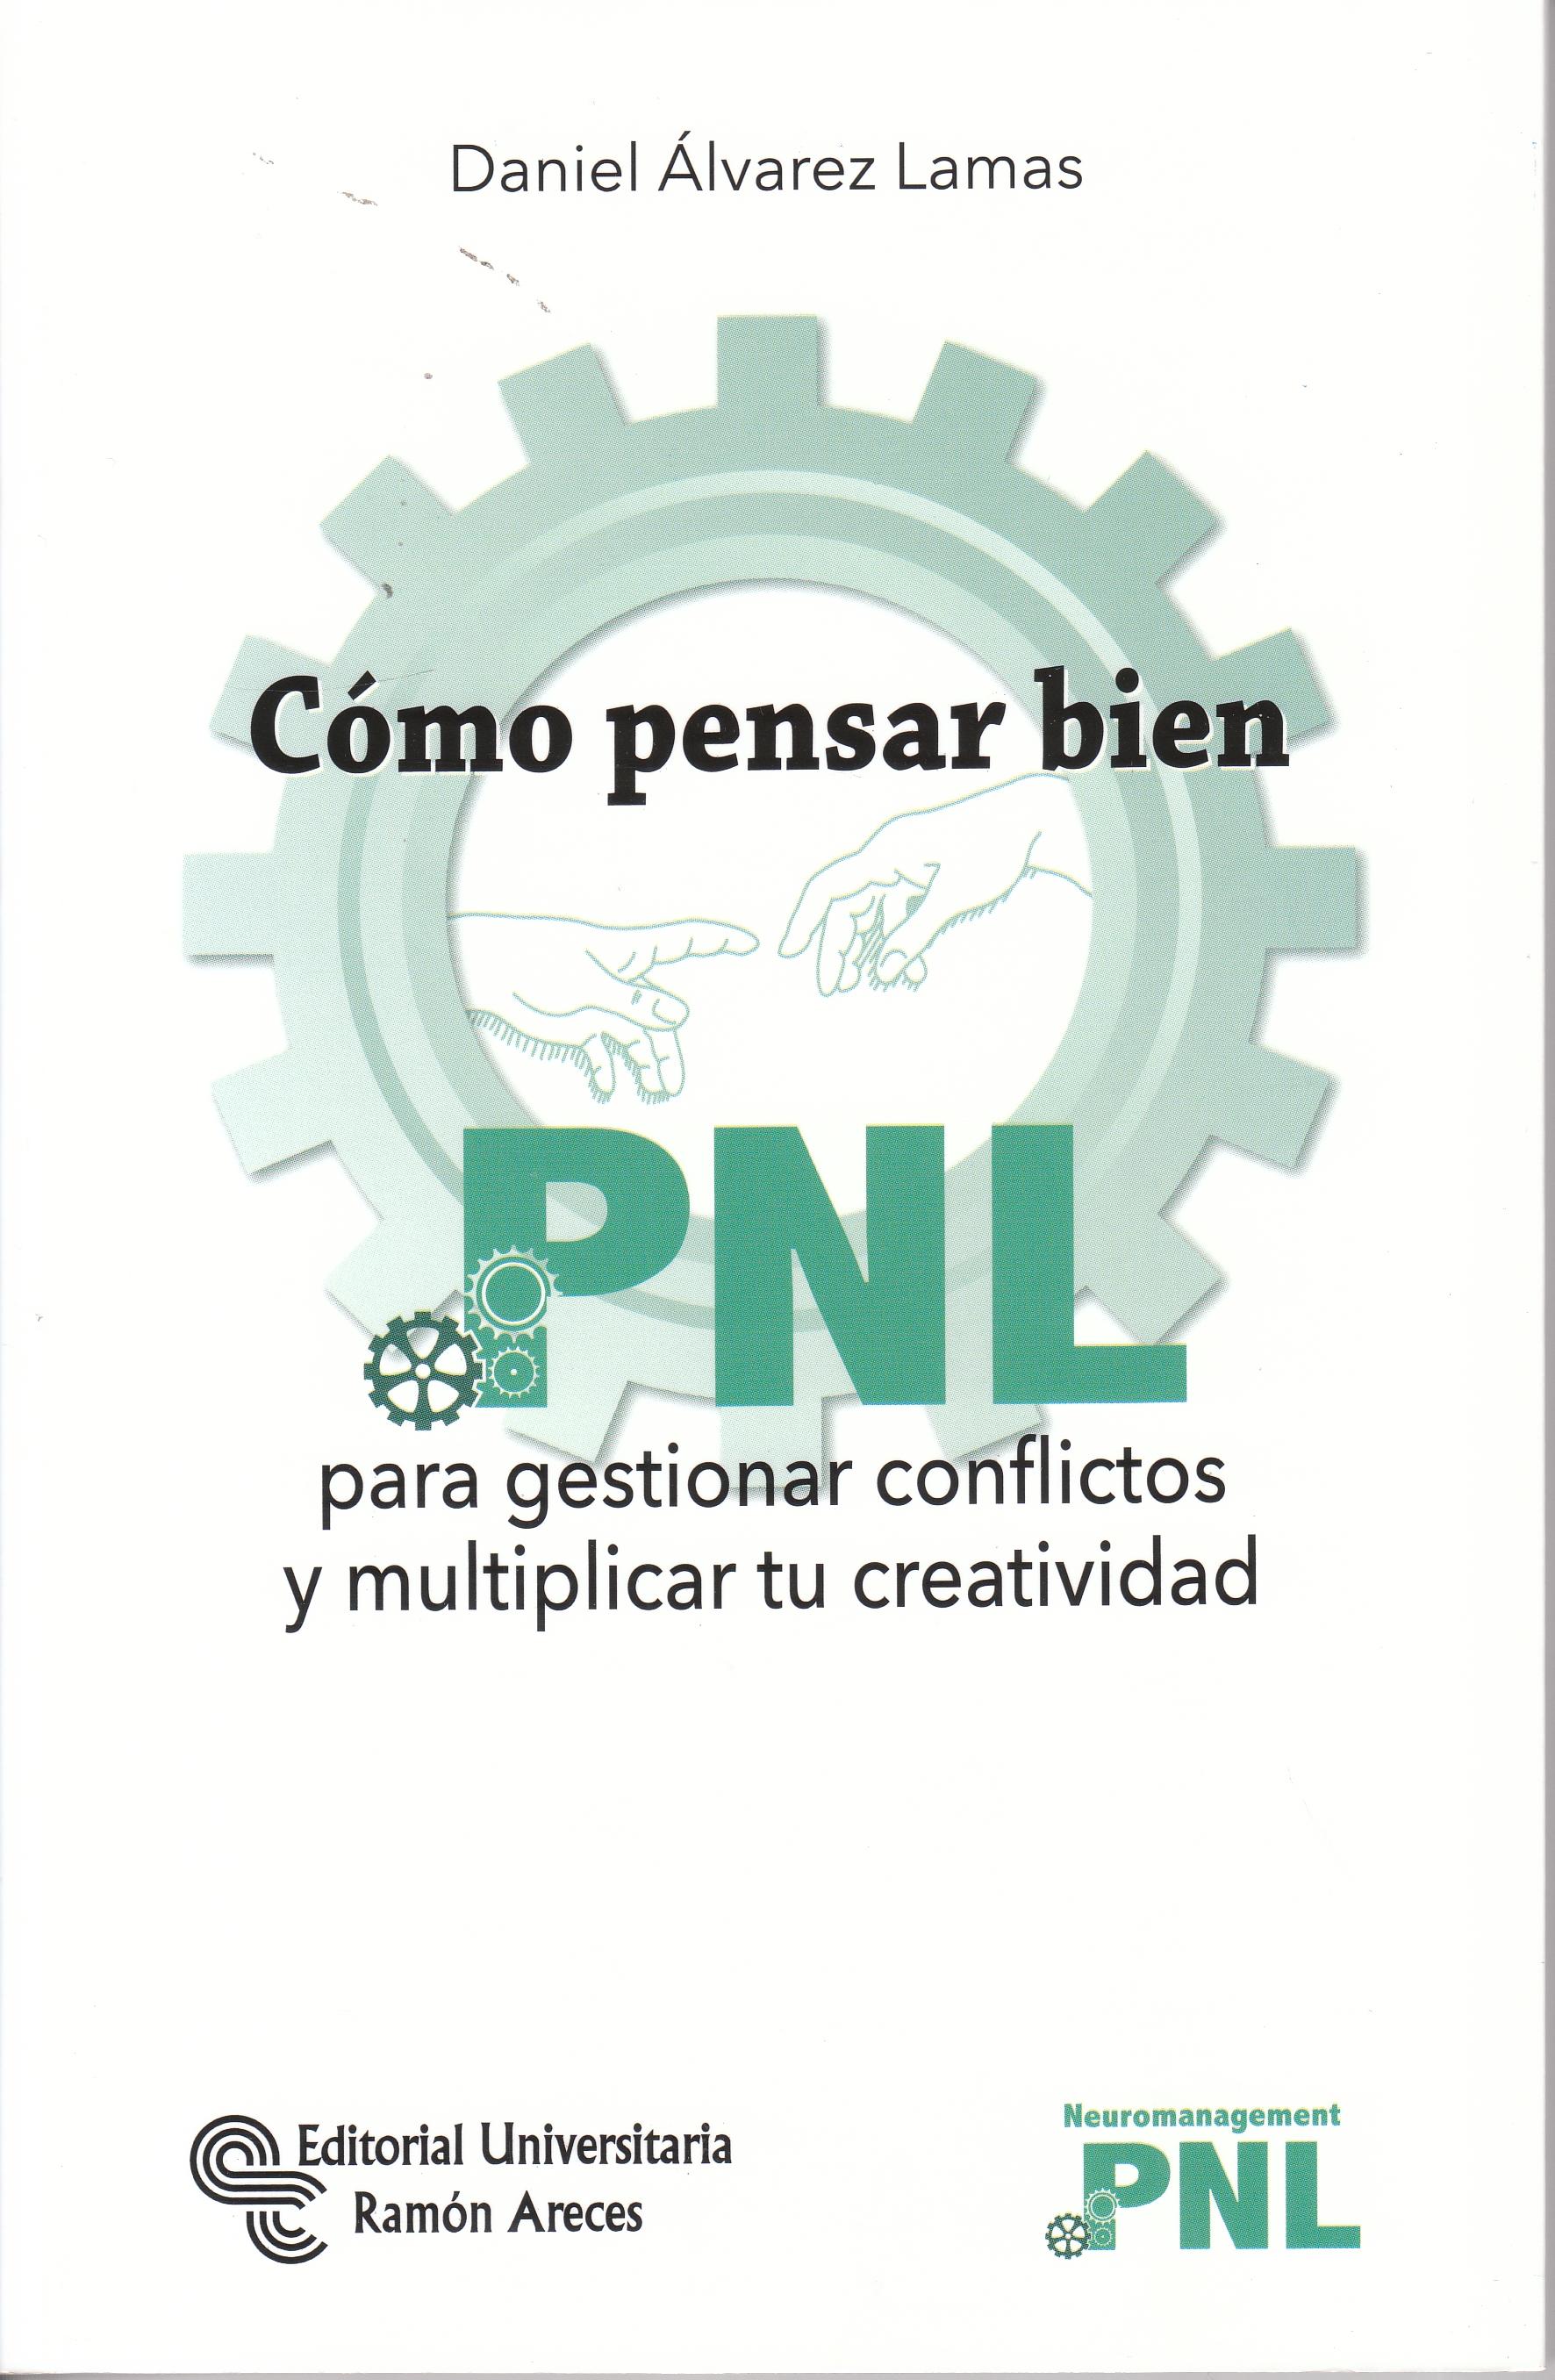 Cómo pensar bien "PNL para gestionar conflictos y multiplicar tu creatividad"